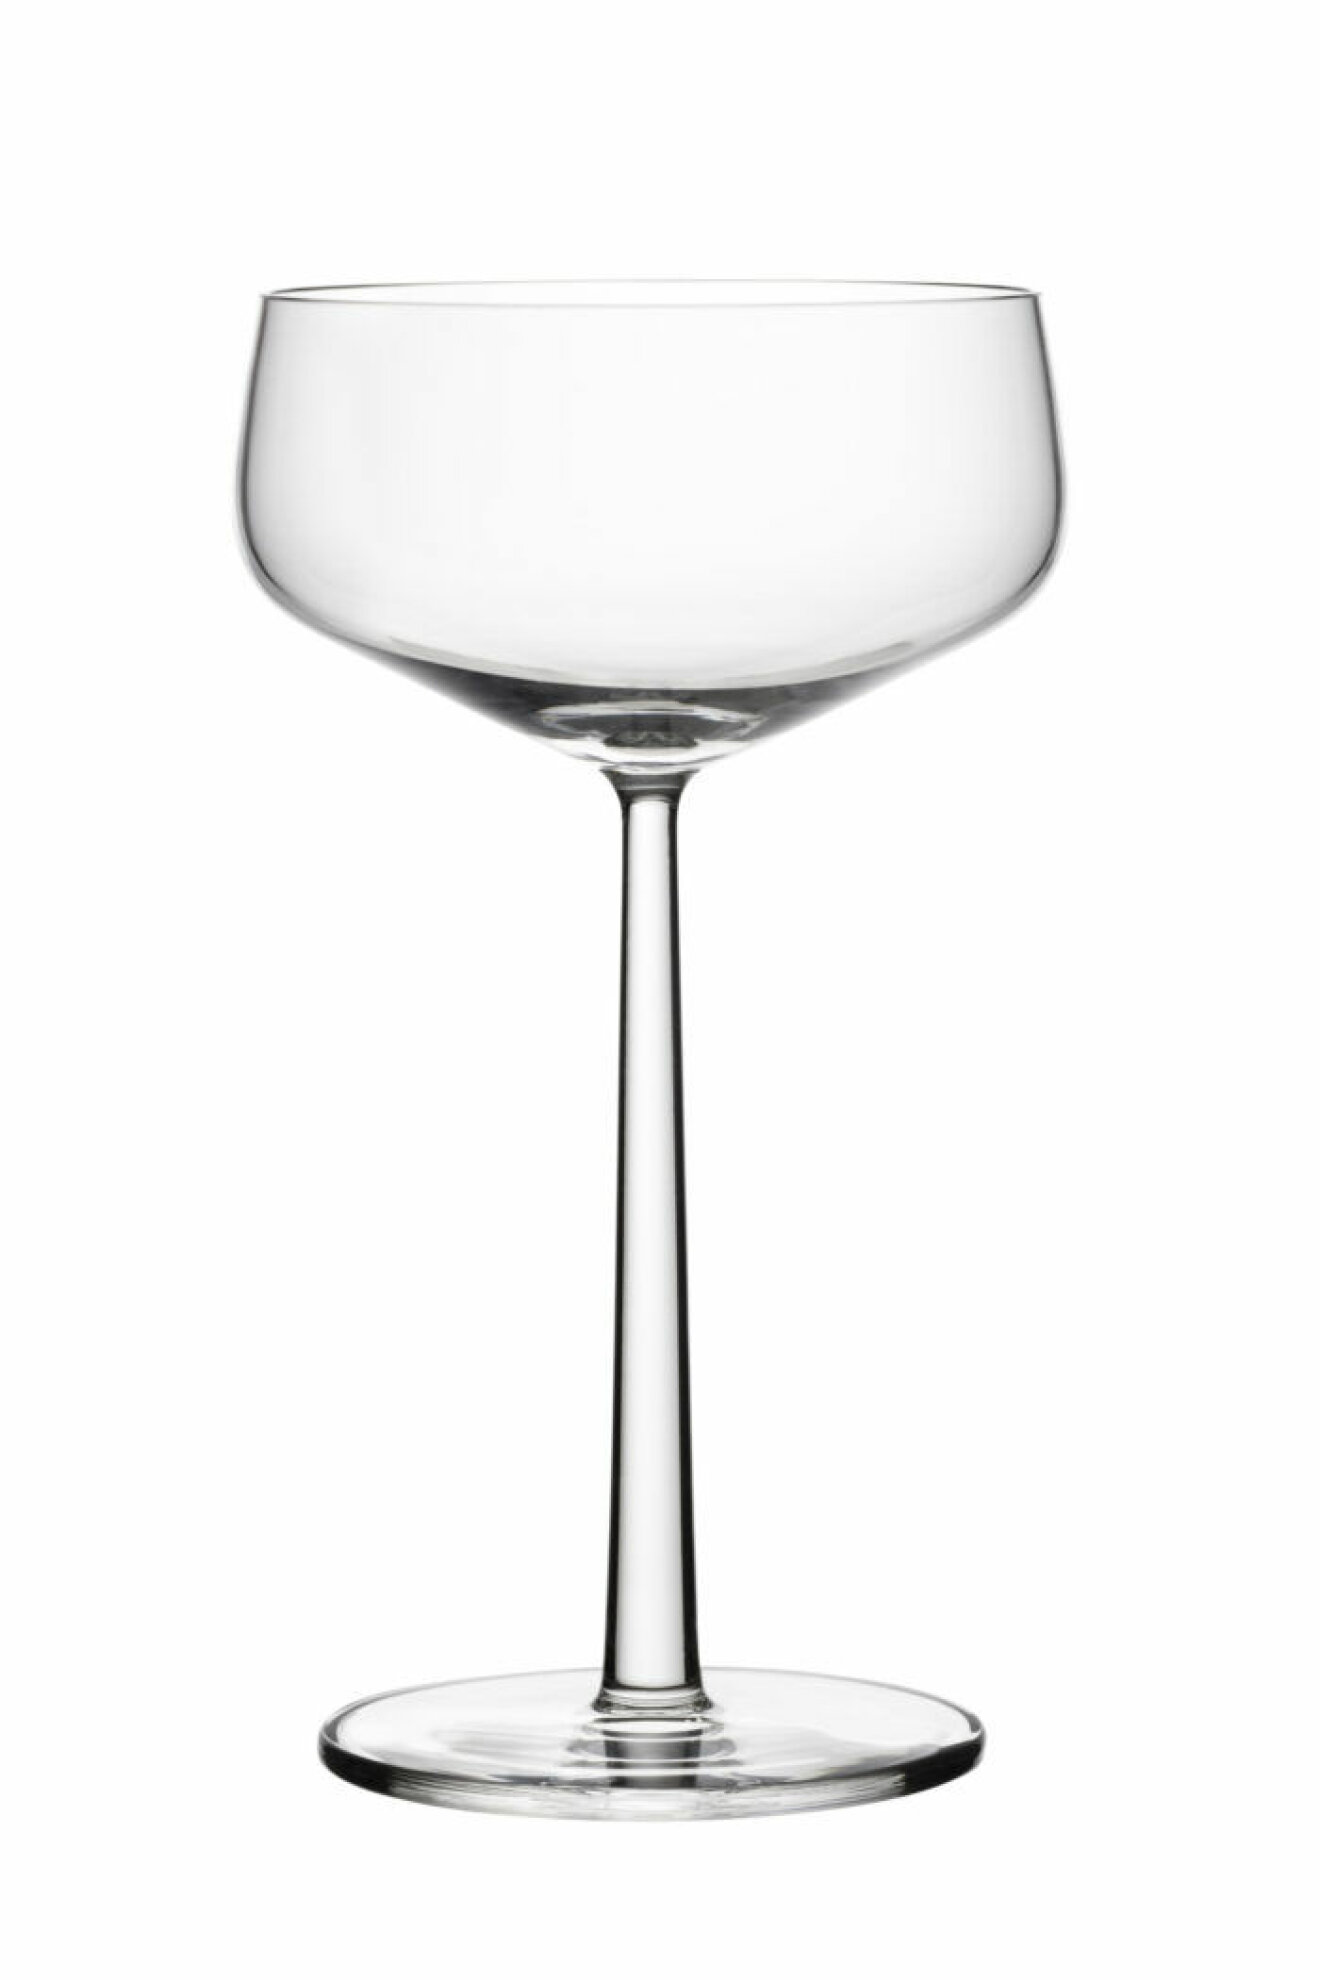 Cocktailglasen dessert/champagneskål 31 cl från Iittalas serie Essence passar fint både som drink-och efterrättsglas.